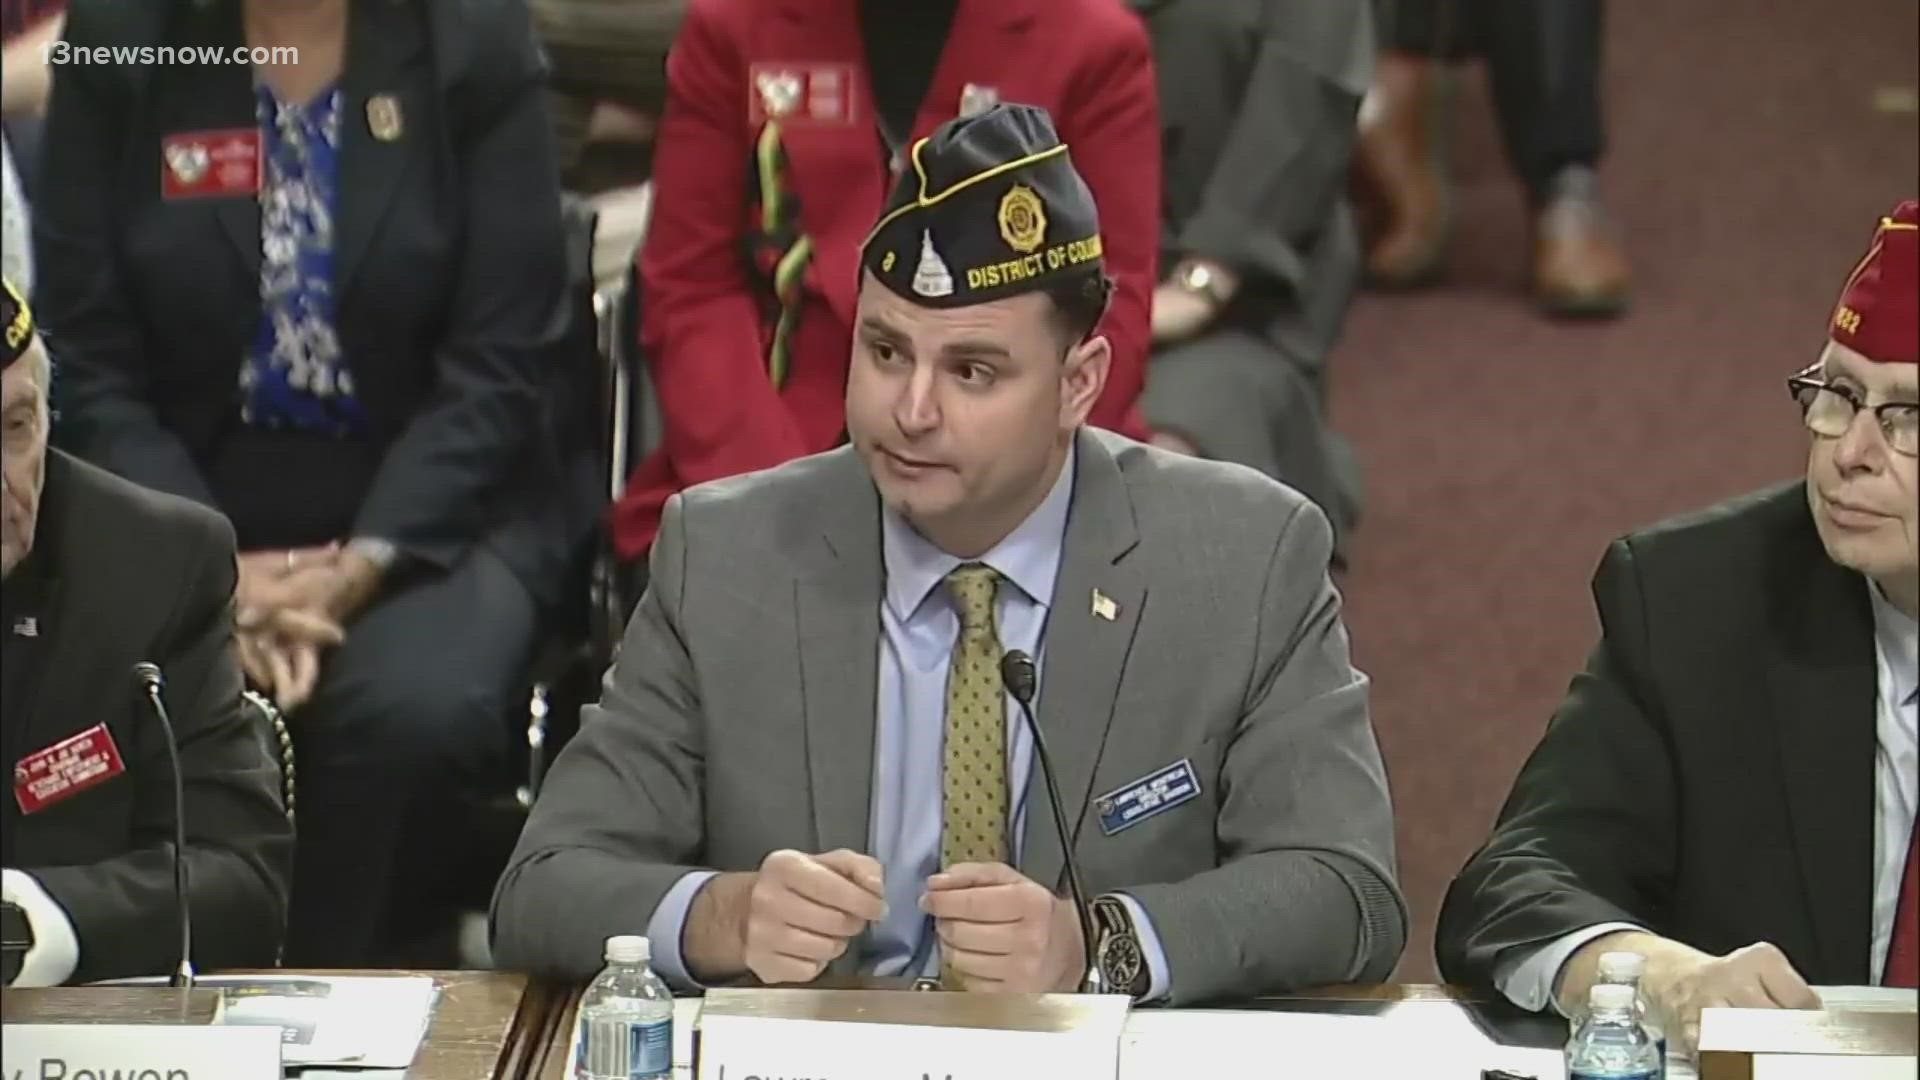 American Legion leaders say ending veteran suicides is their top priority.